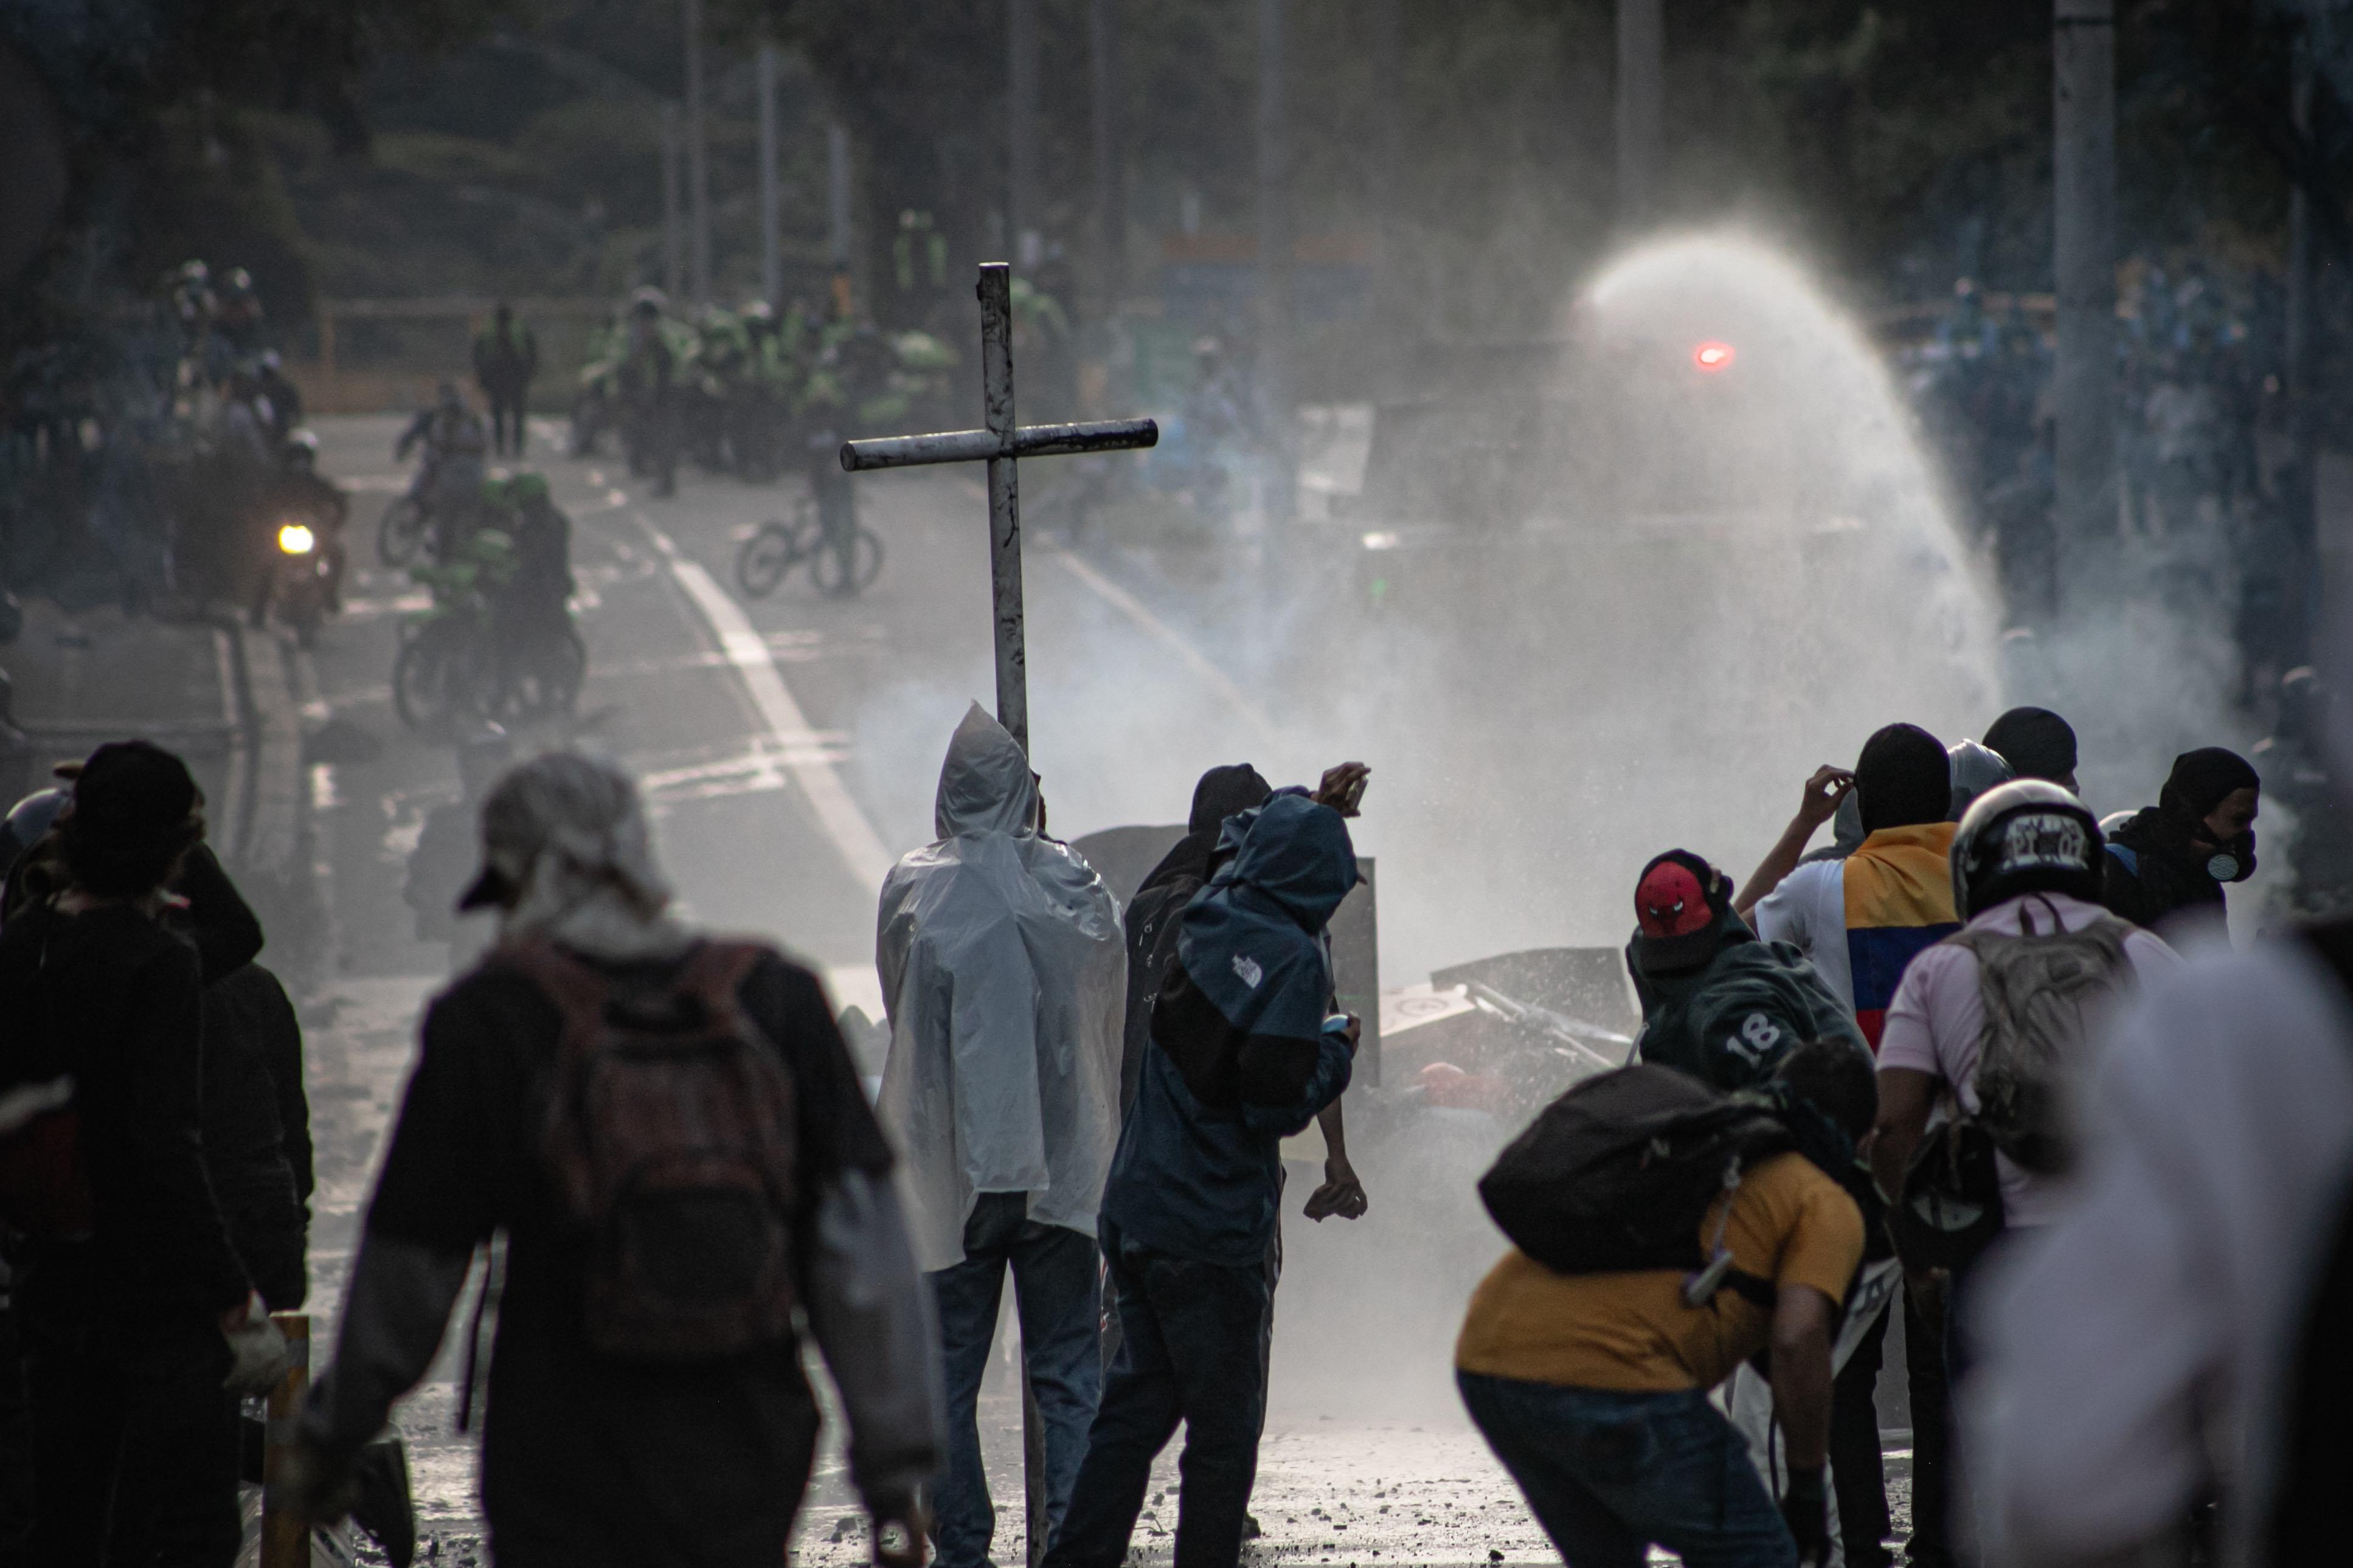 Protesta social durante el Paro Nacional – Colombia, 2021 (photo : Serna Sánchez Javier) 